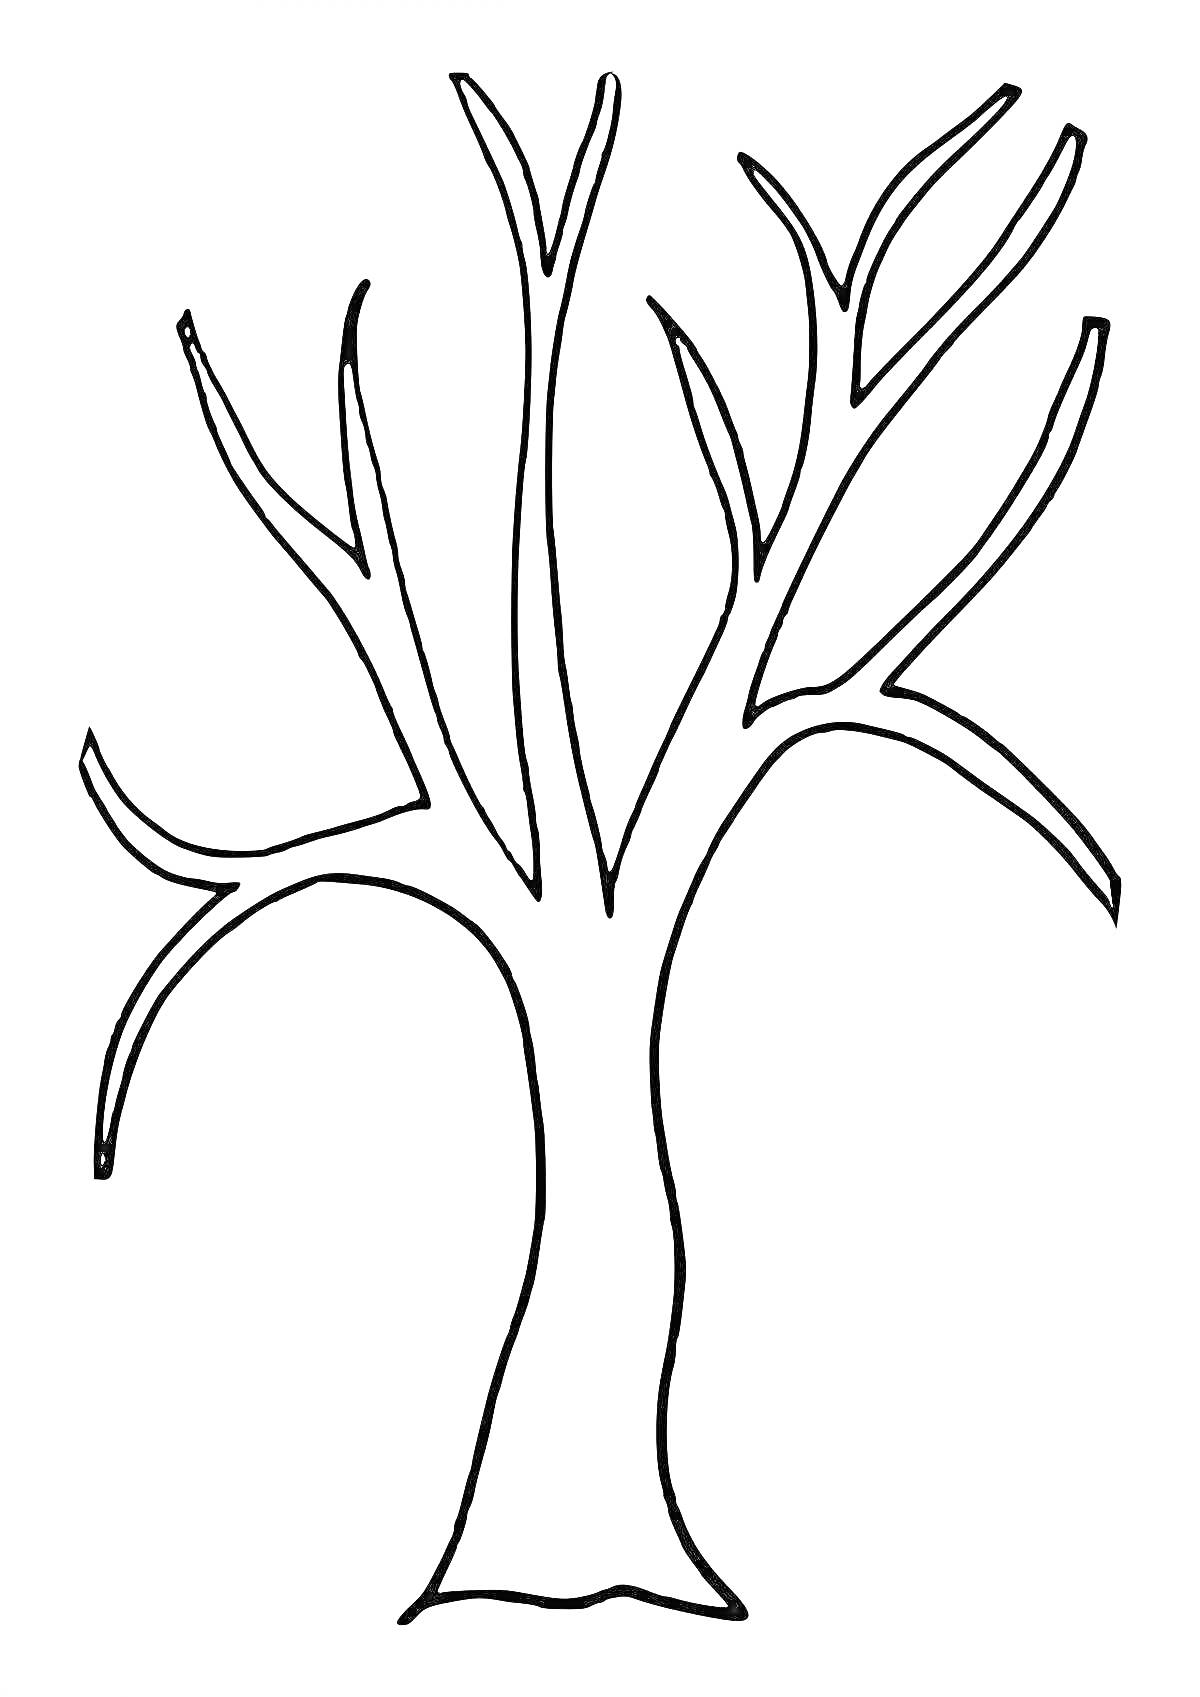 РаскраскаКонтурное дерево без листьев